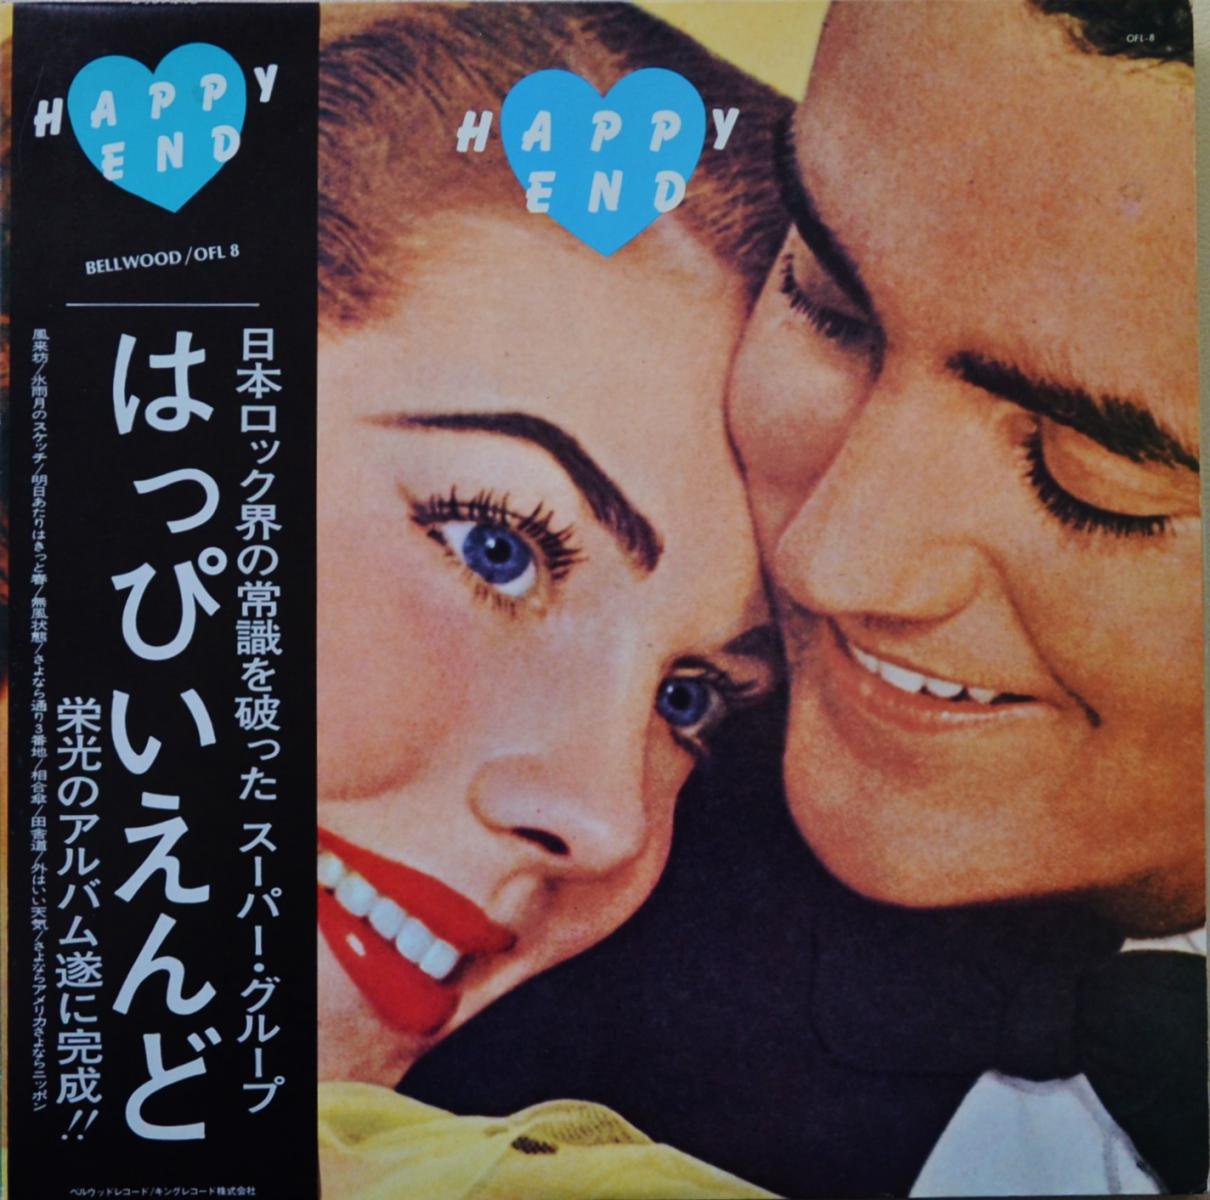 はっぴいえんど HAPPY END / HAPPY END (LP) - HIP TANK RECORDS